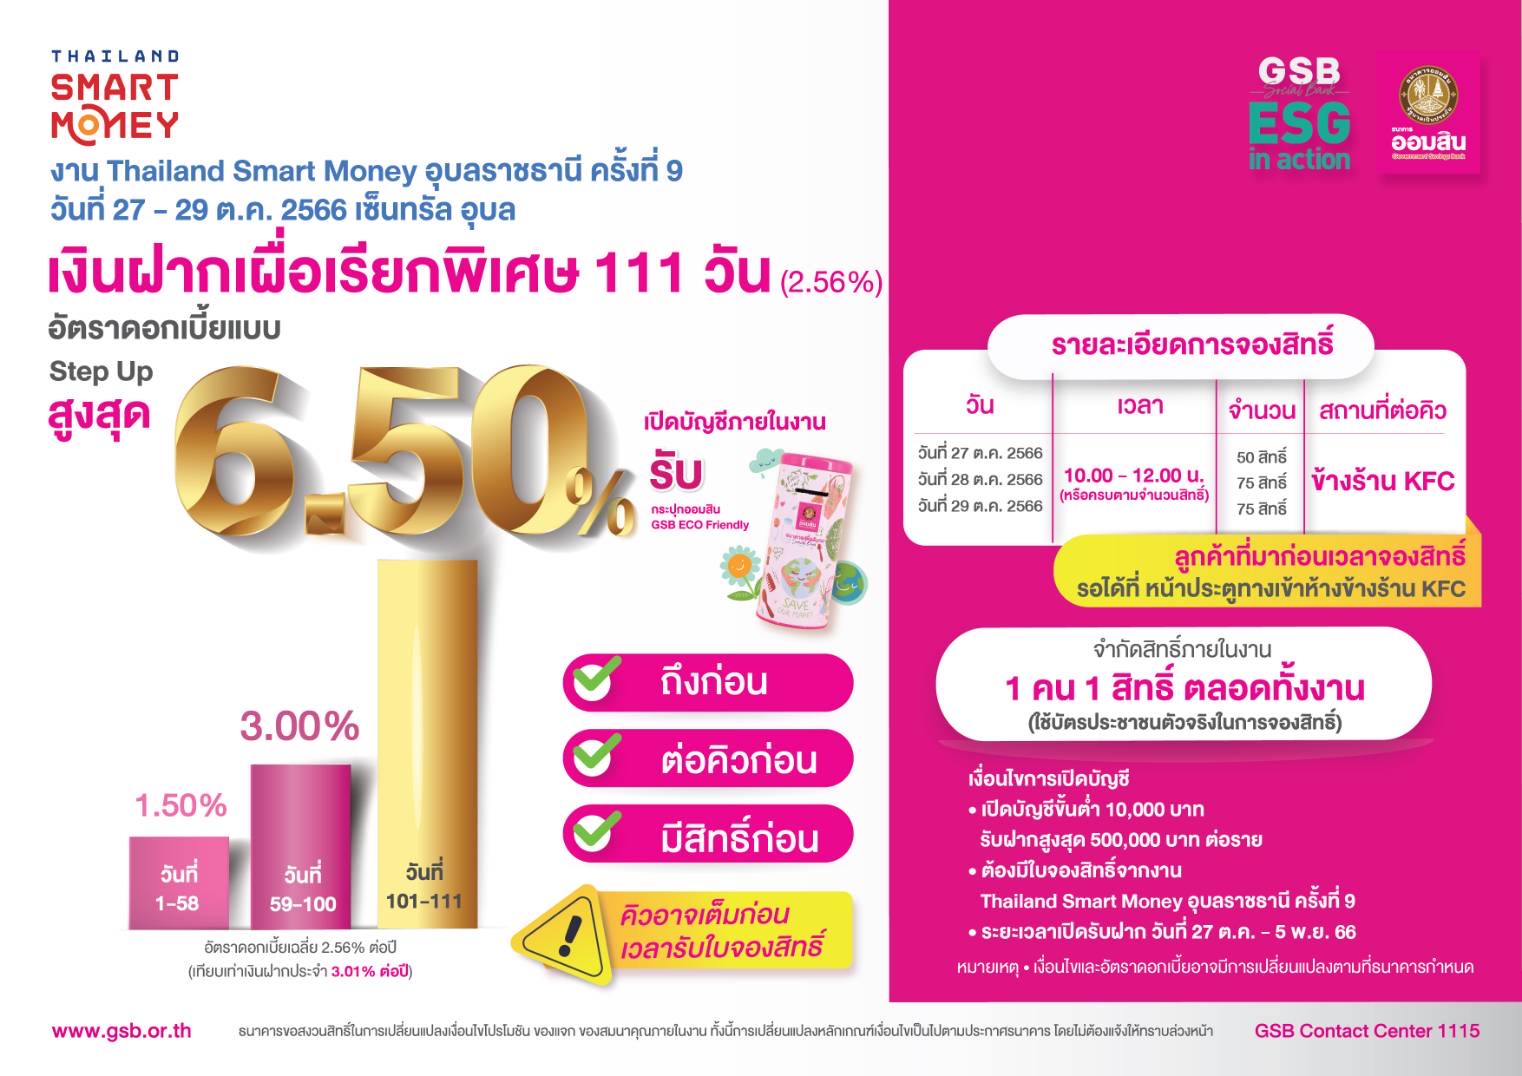 ออมสิน ชูโปรเด็ดเงินฝากดอกเบี้ยสูงสุด 6.50% ต่อปี งาน Thailand Smart Money อุบลฯ